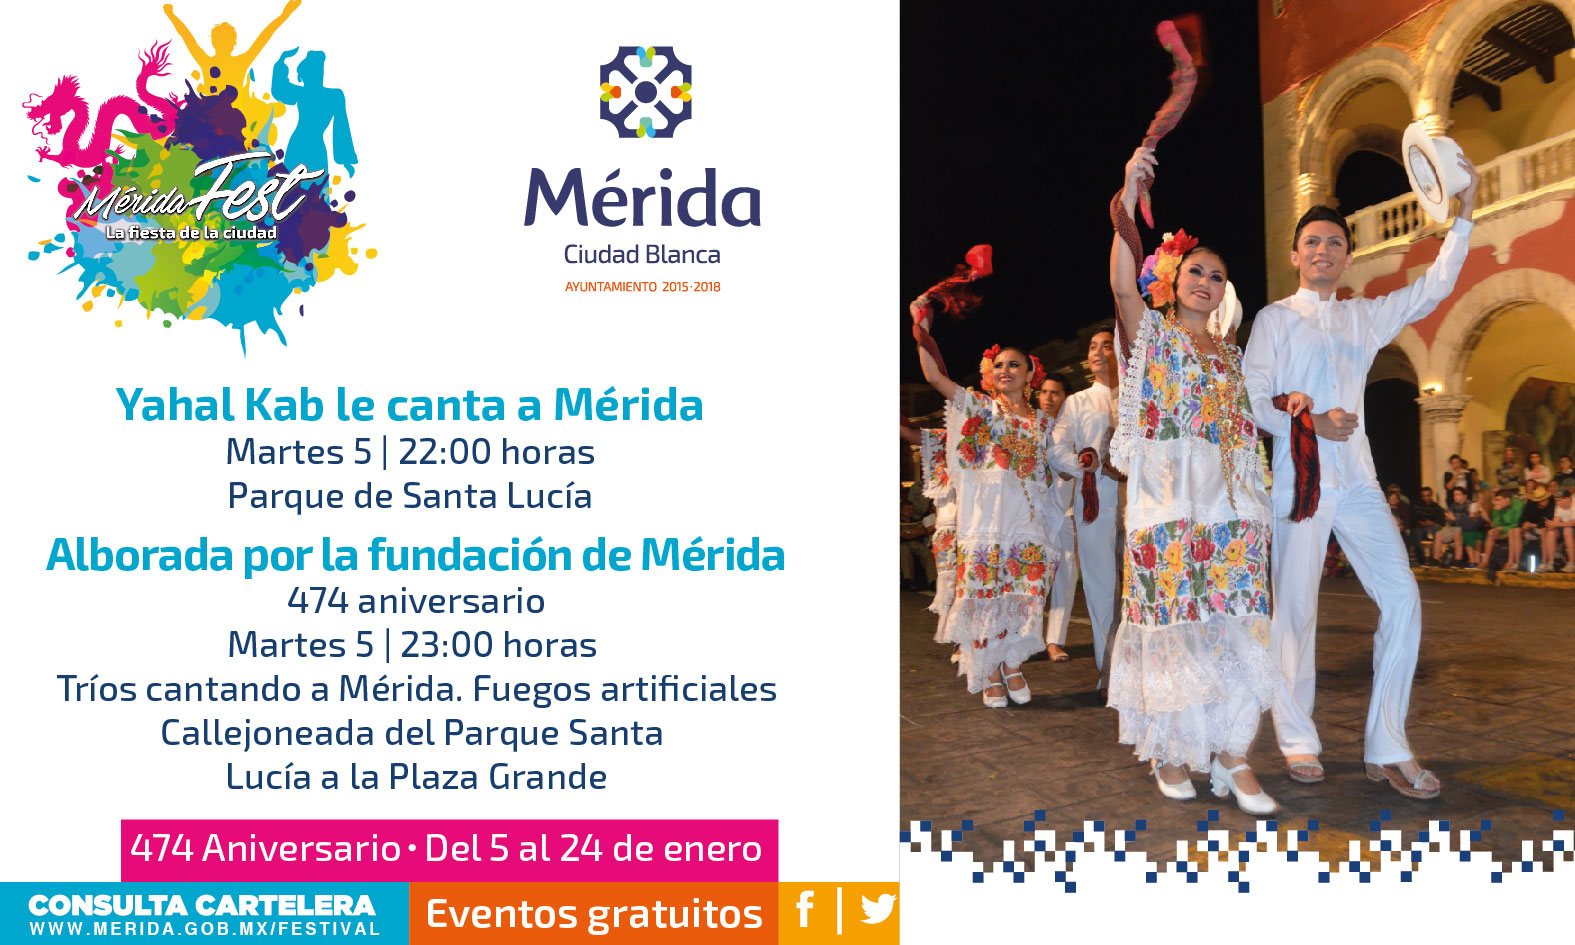 Mérida Fest: Tributo a la capital de Yucatán